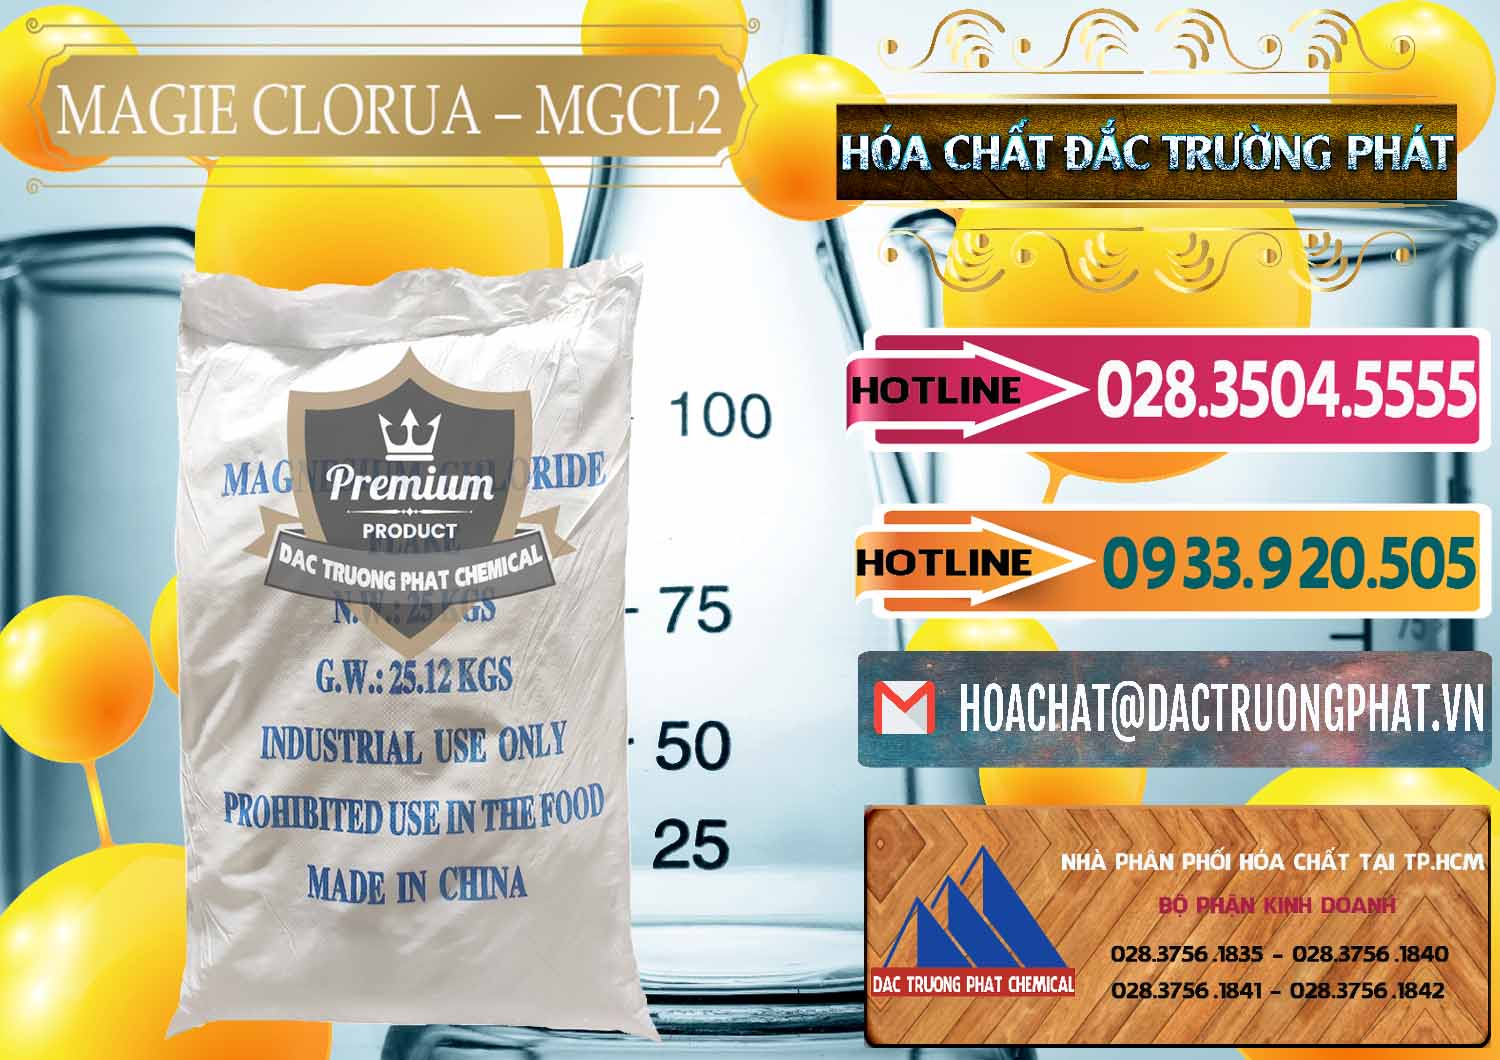 Công ty bán _ phân phối Magie Clorua – MGCL2 96% Dạng Vảy Trung Quốc China - 0091 - Cty kinh doanh ( phân phối ) hóa chất tại TP.HCM - dactruongphat.vn